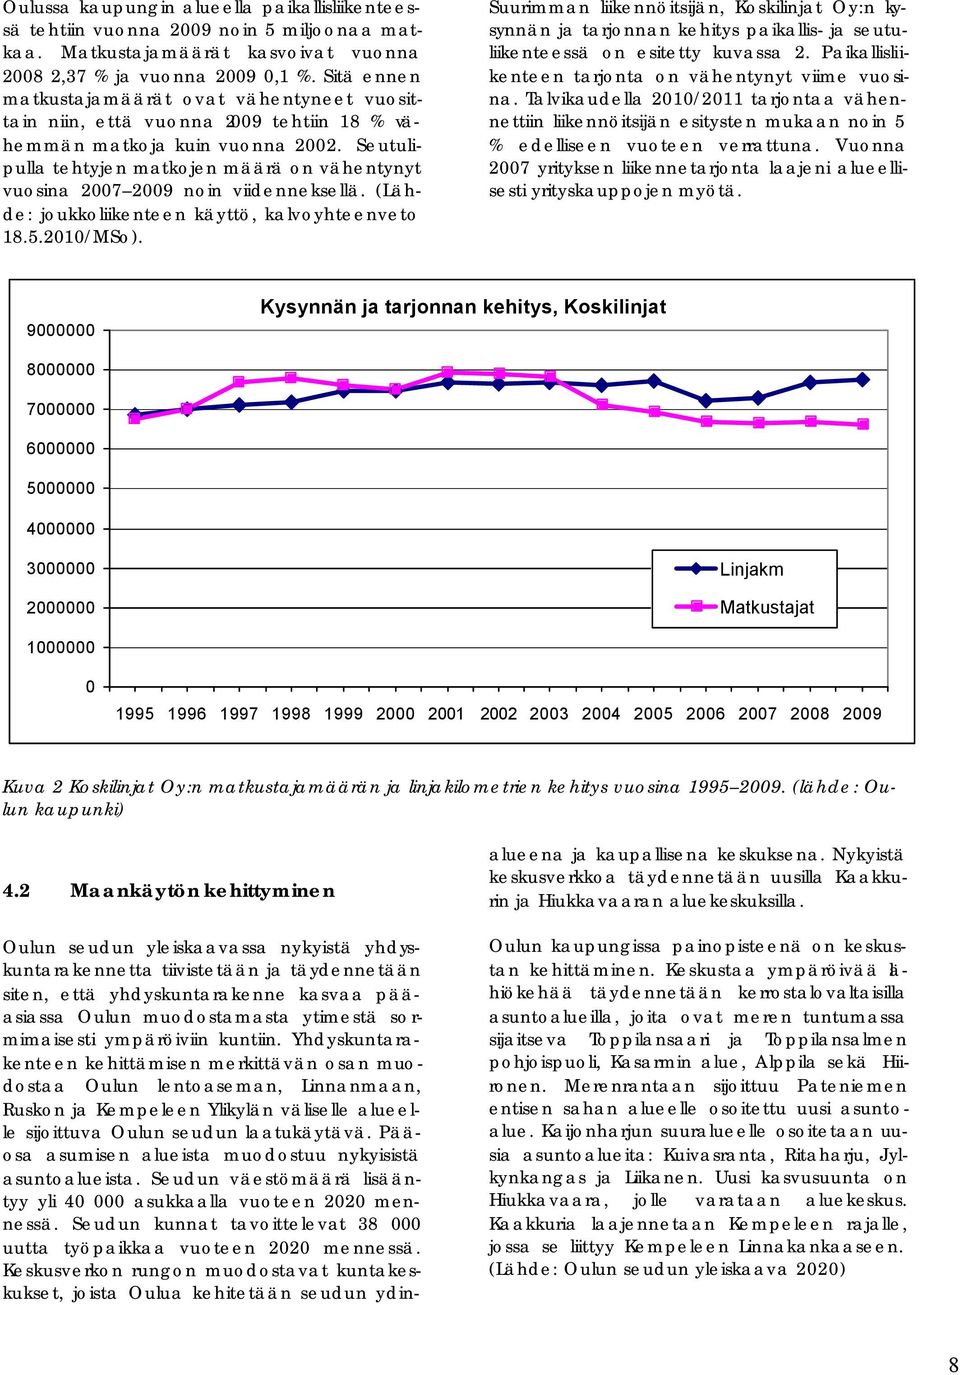 Seutulipulla tehtyjen matkojen määrä on vähentynyt vuosina 2007 2009 noin viidenneksellä. (Lähde: joukkoliikenteen käyttö, kalvoyhteenveto 18.5.2010/MSo).